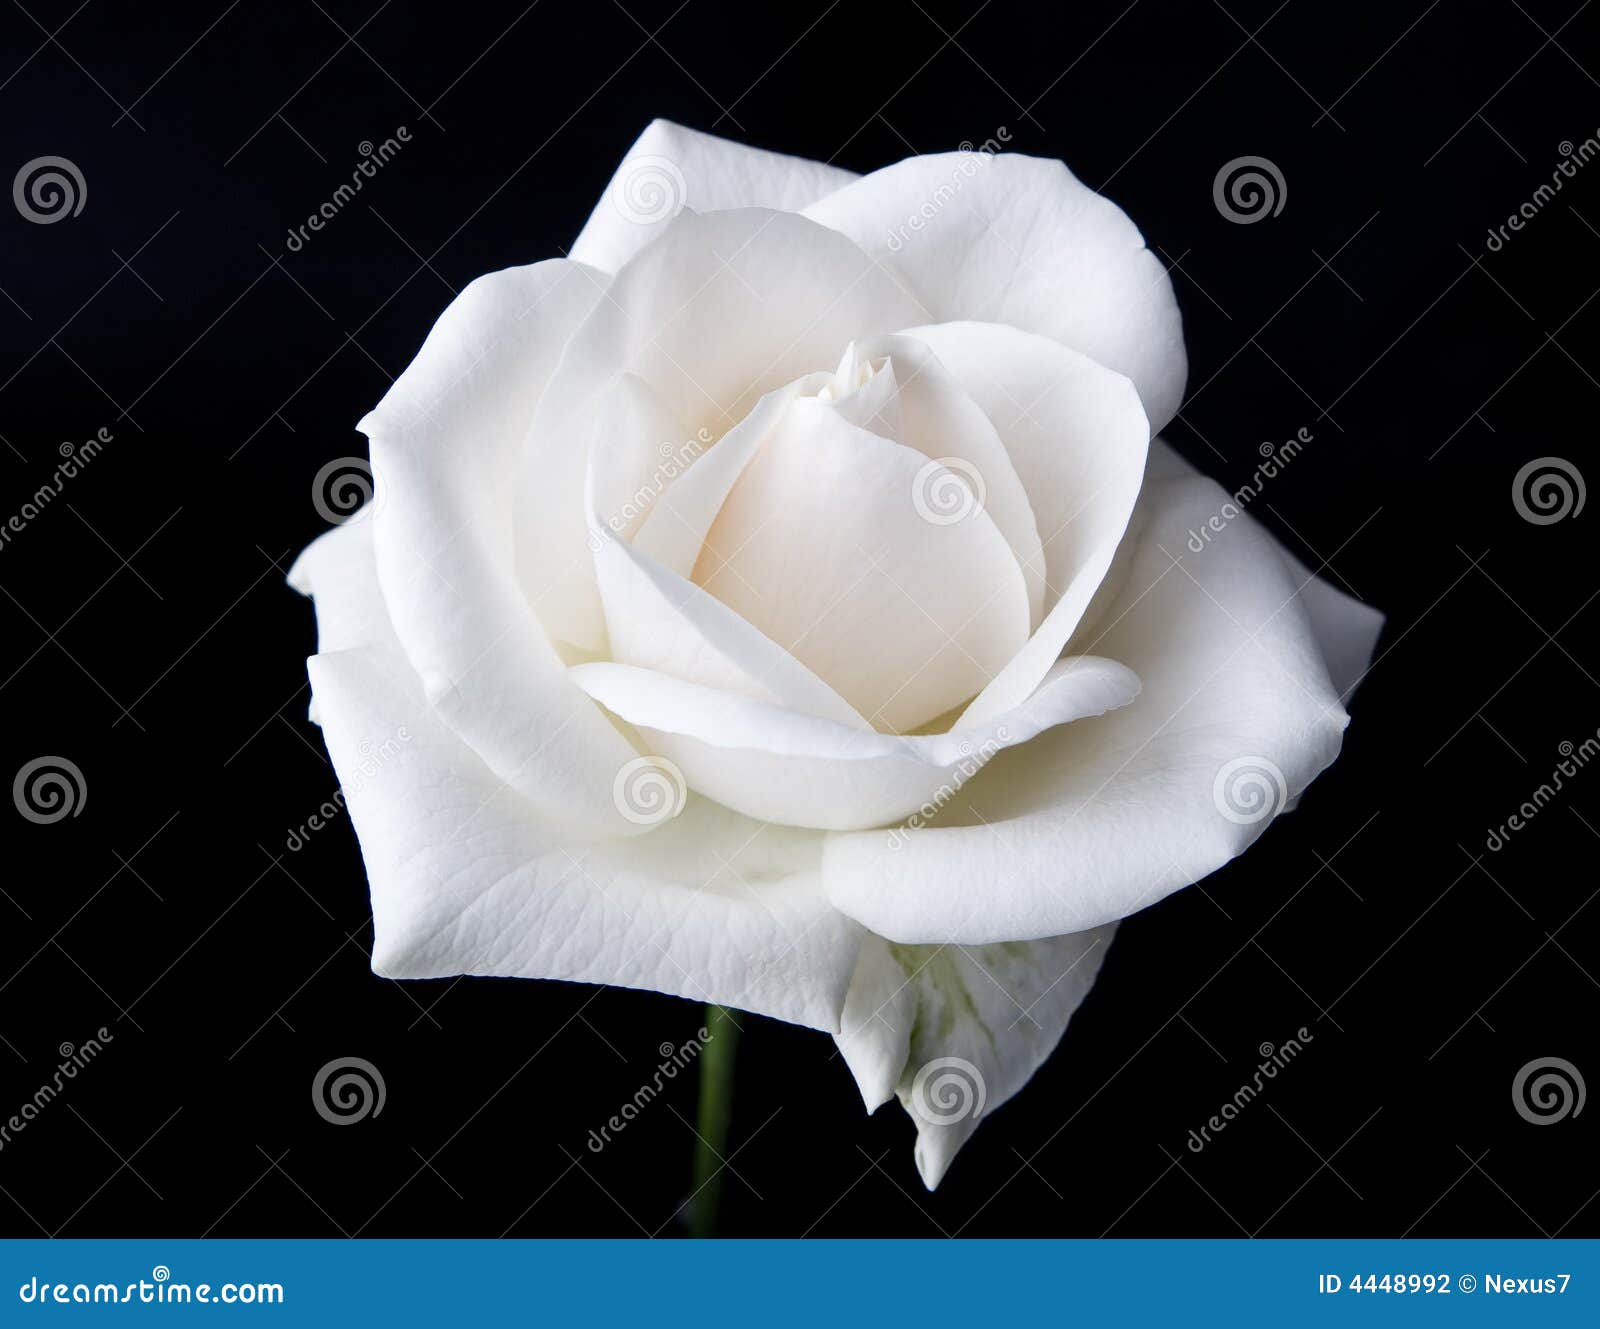 Single White Rose Black Background